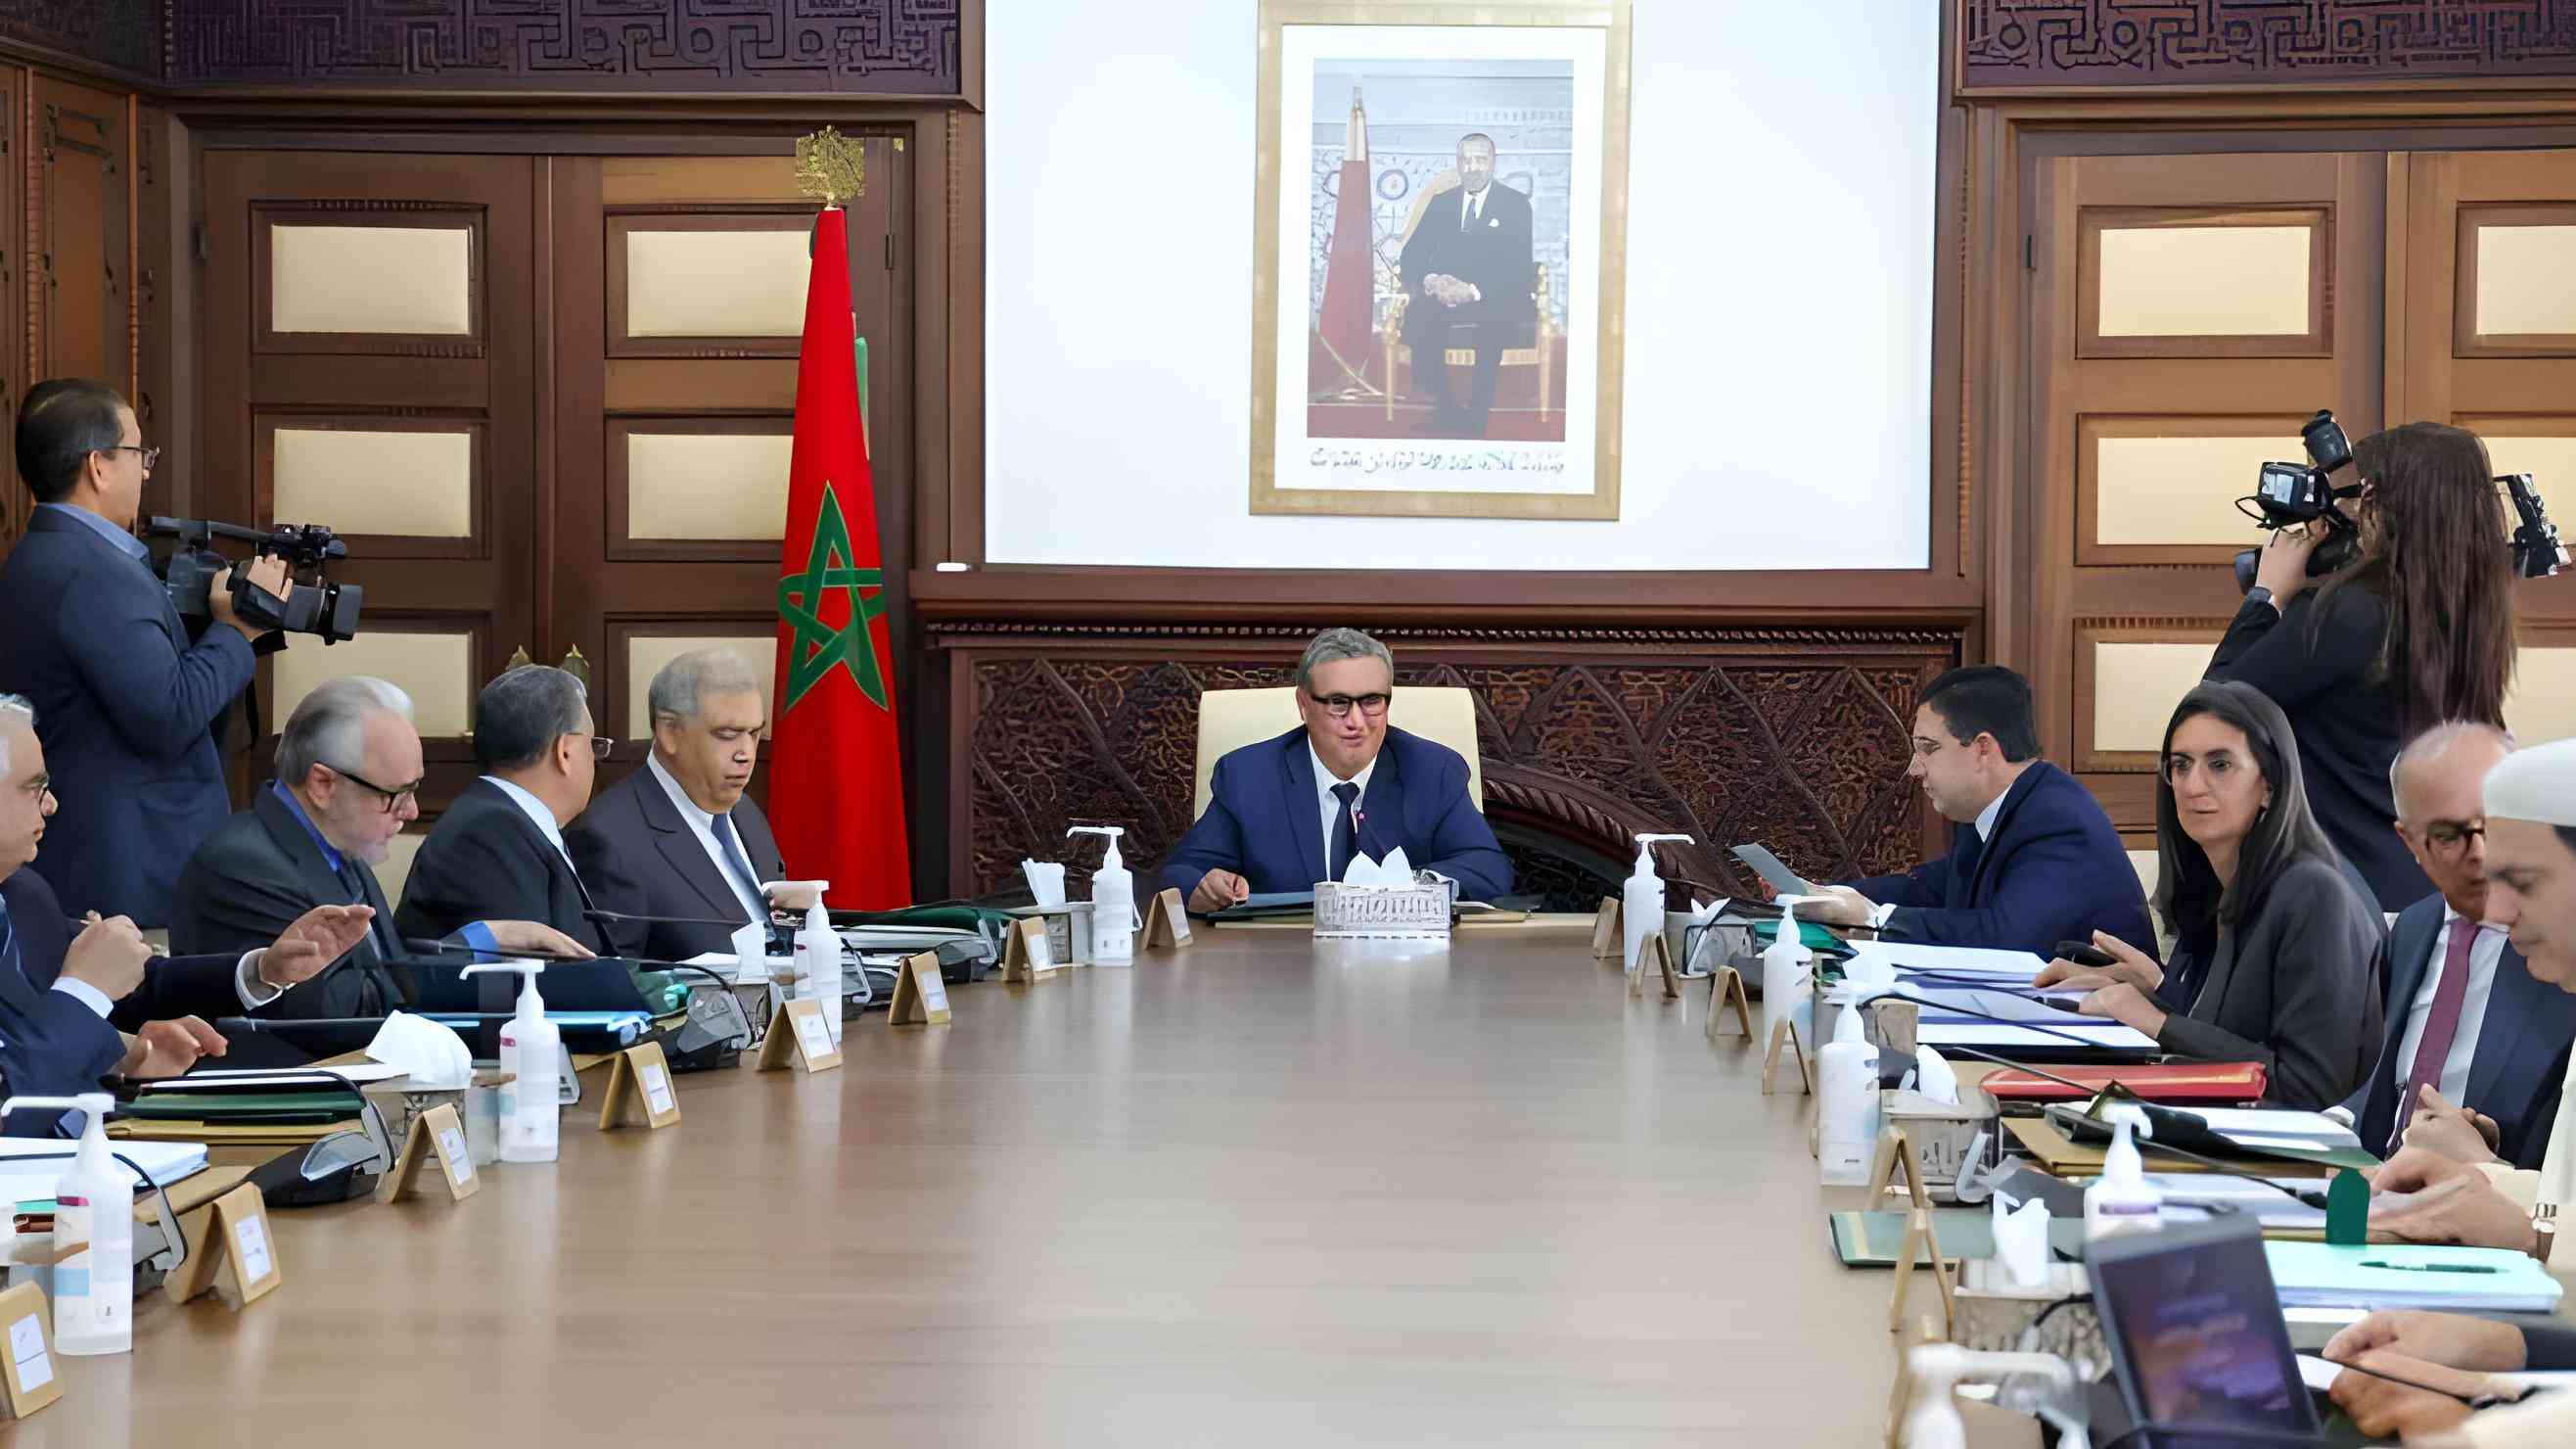  المجلس الحكومي يطلع على اتفاق موقع بالداخلة في مجال الجمارك بين المغرب وغامبيا  